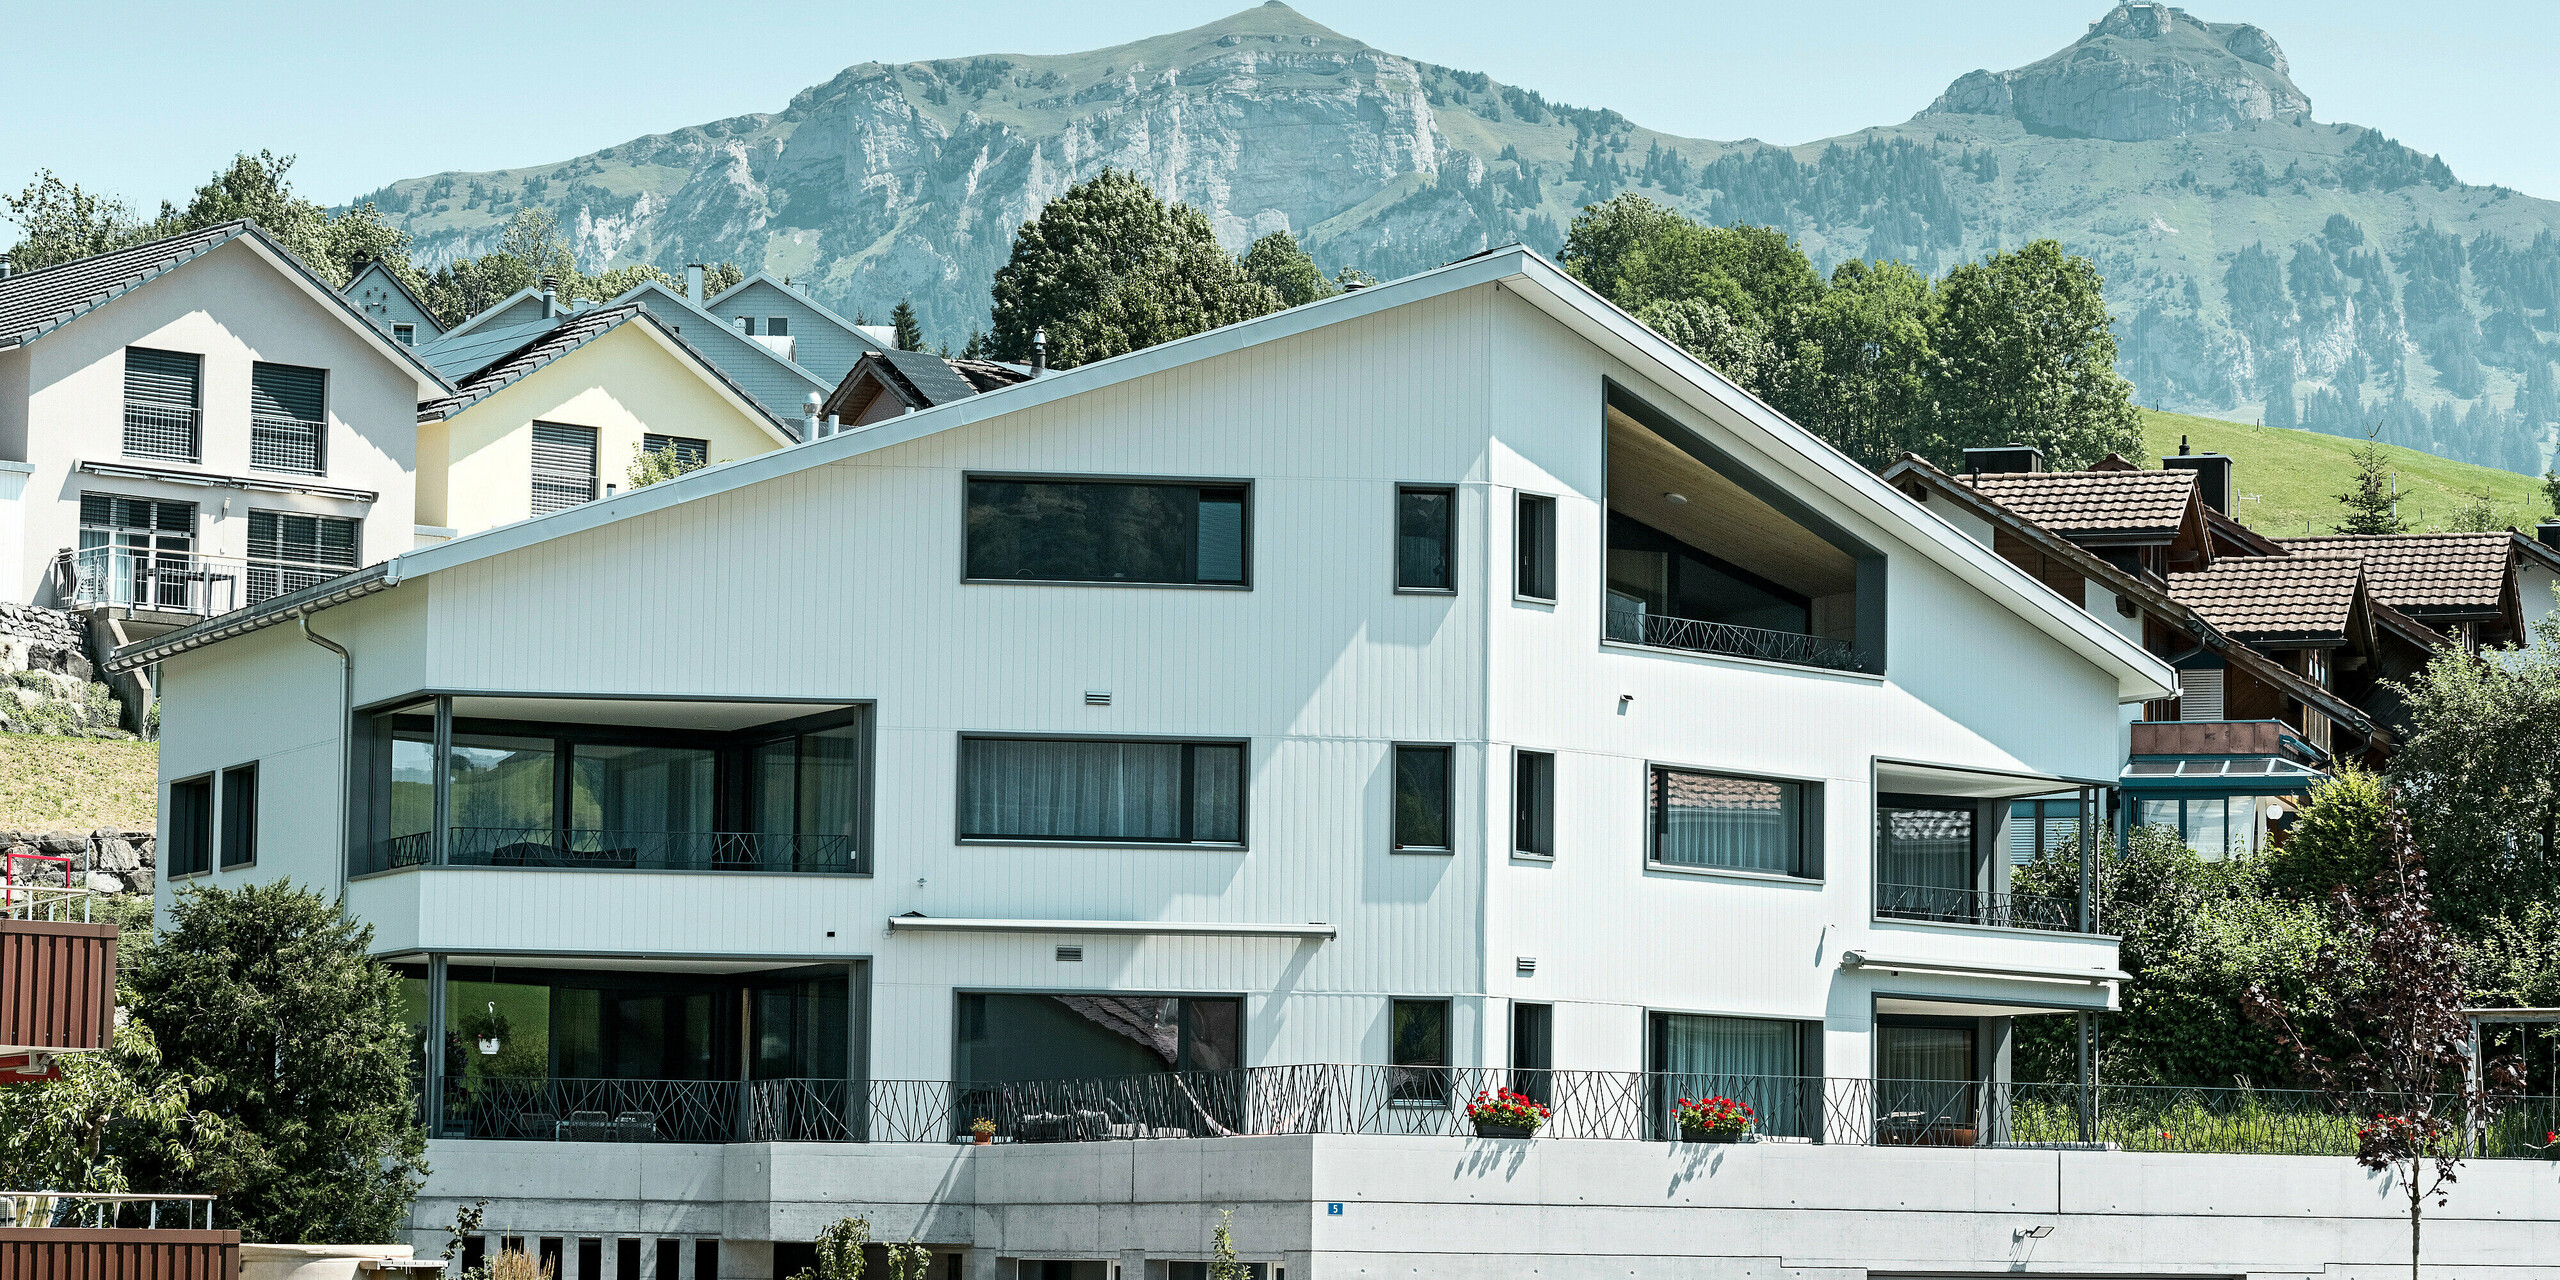 PREFA Sidings in P.10 Steingrau bzw. P.10 Prefaweiß an den Fassaden von zwei benachbarten Mehrfamilienhäusern in Weissbad, Schweiz.